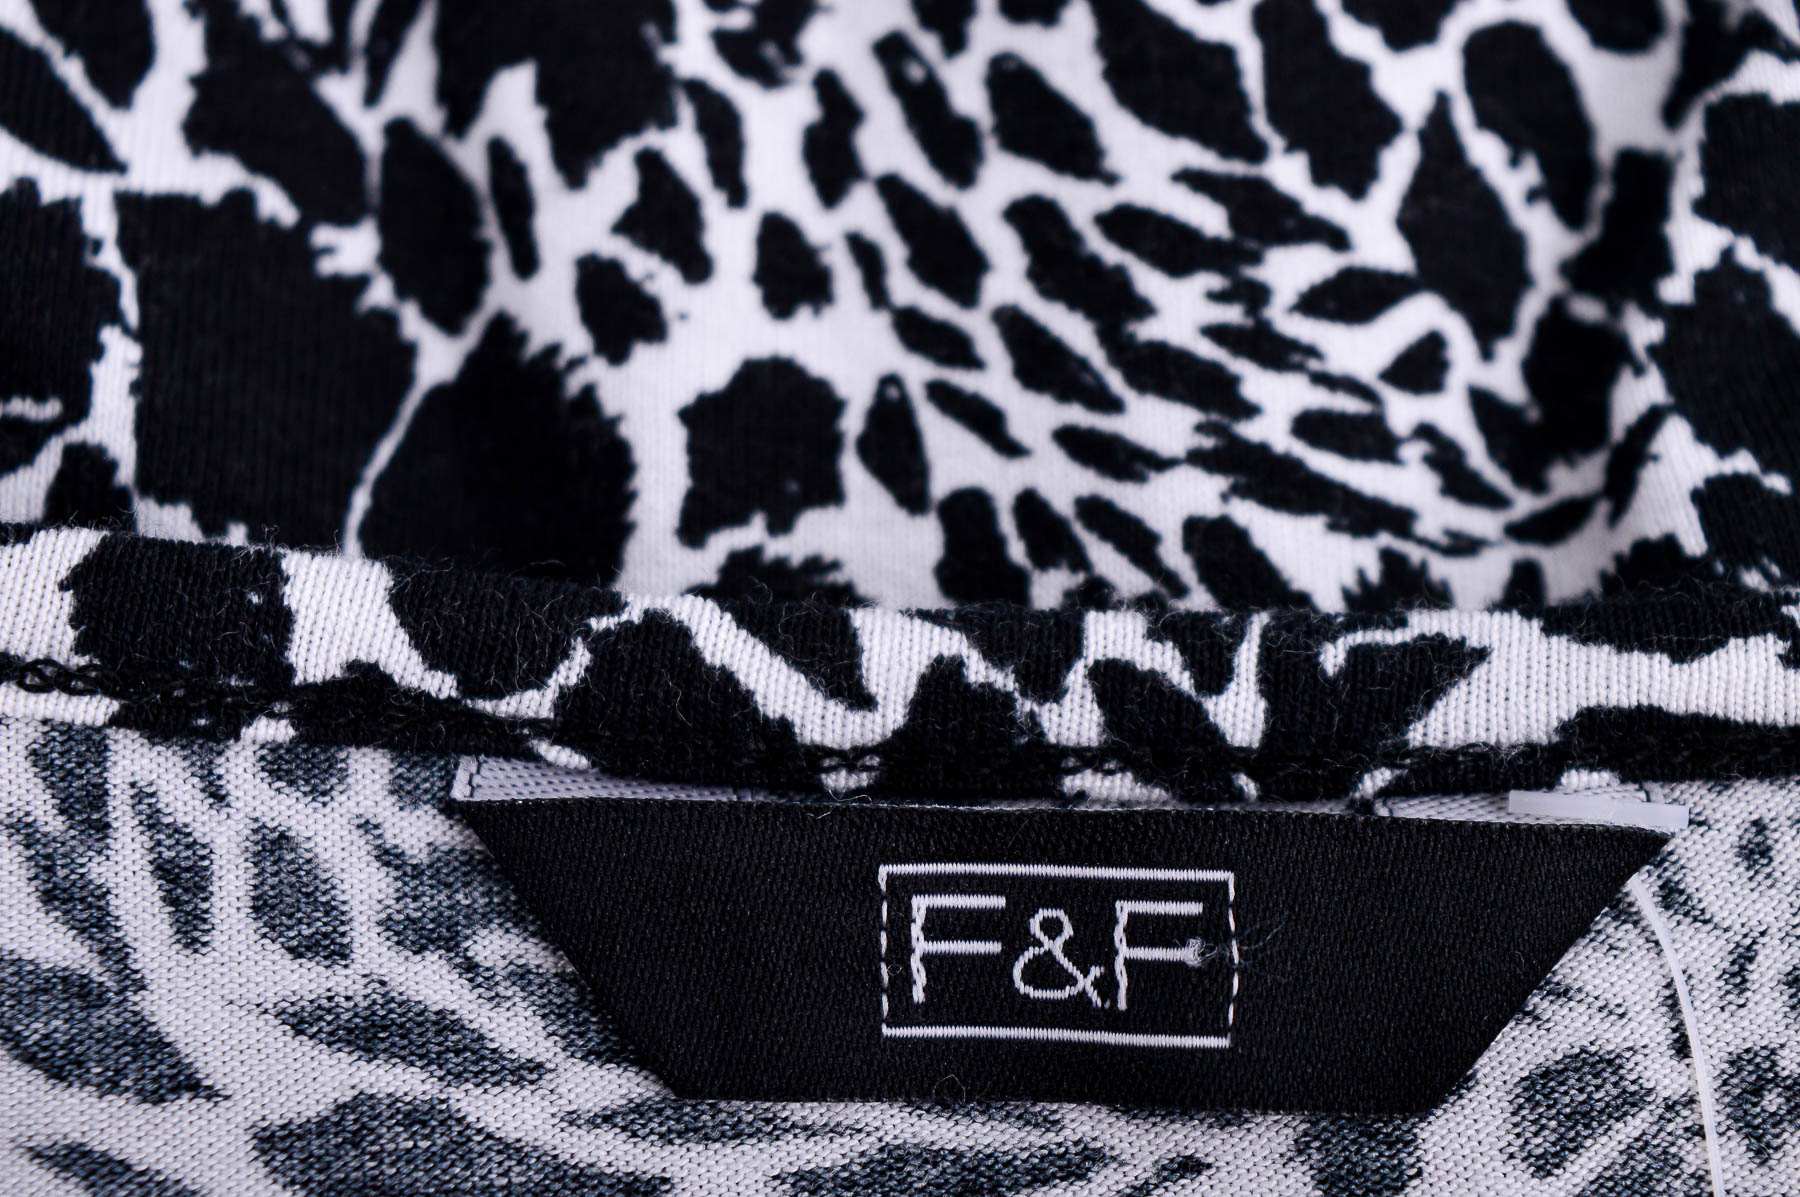 Дамска блуза - F&F - 2